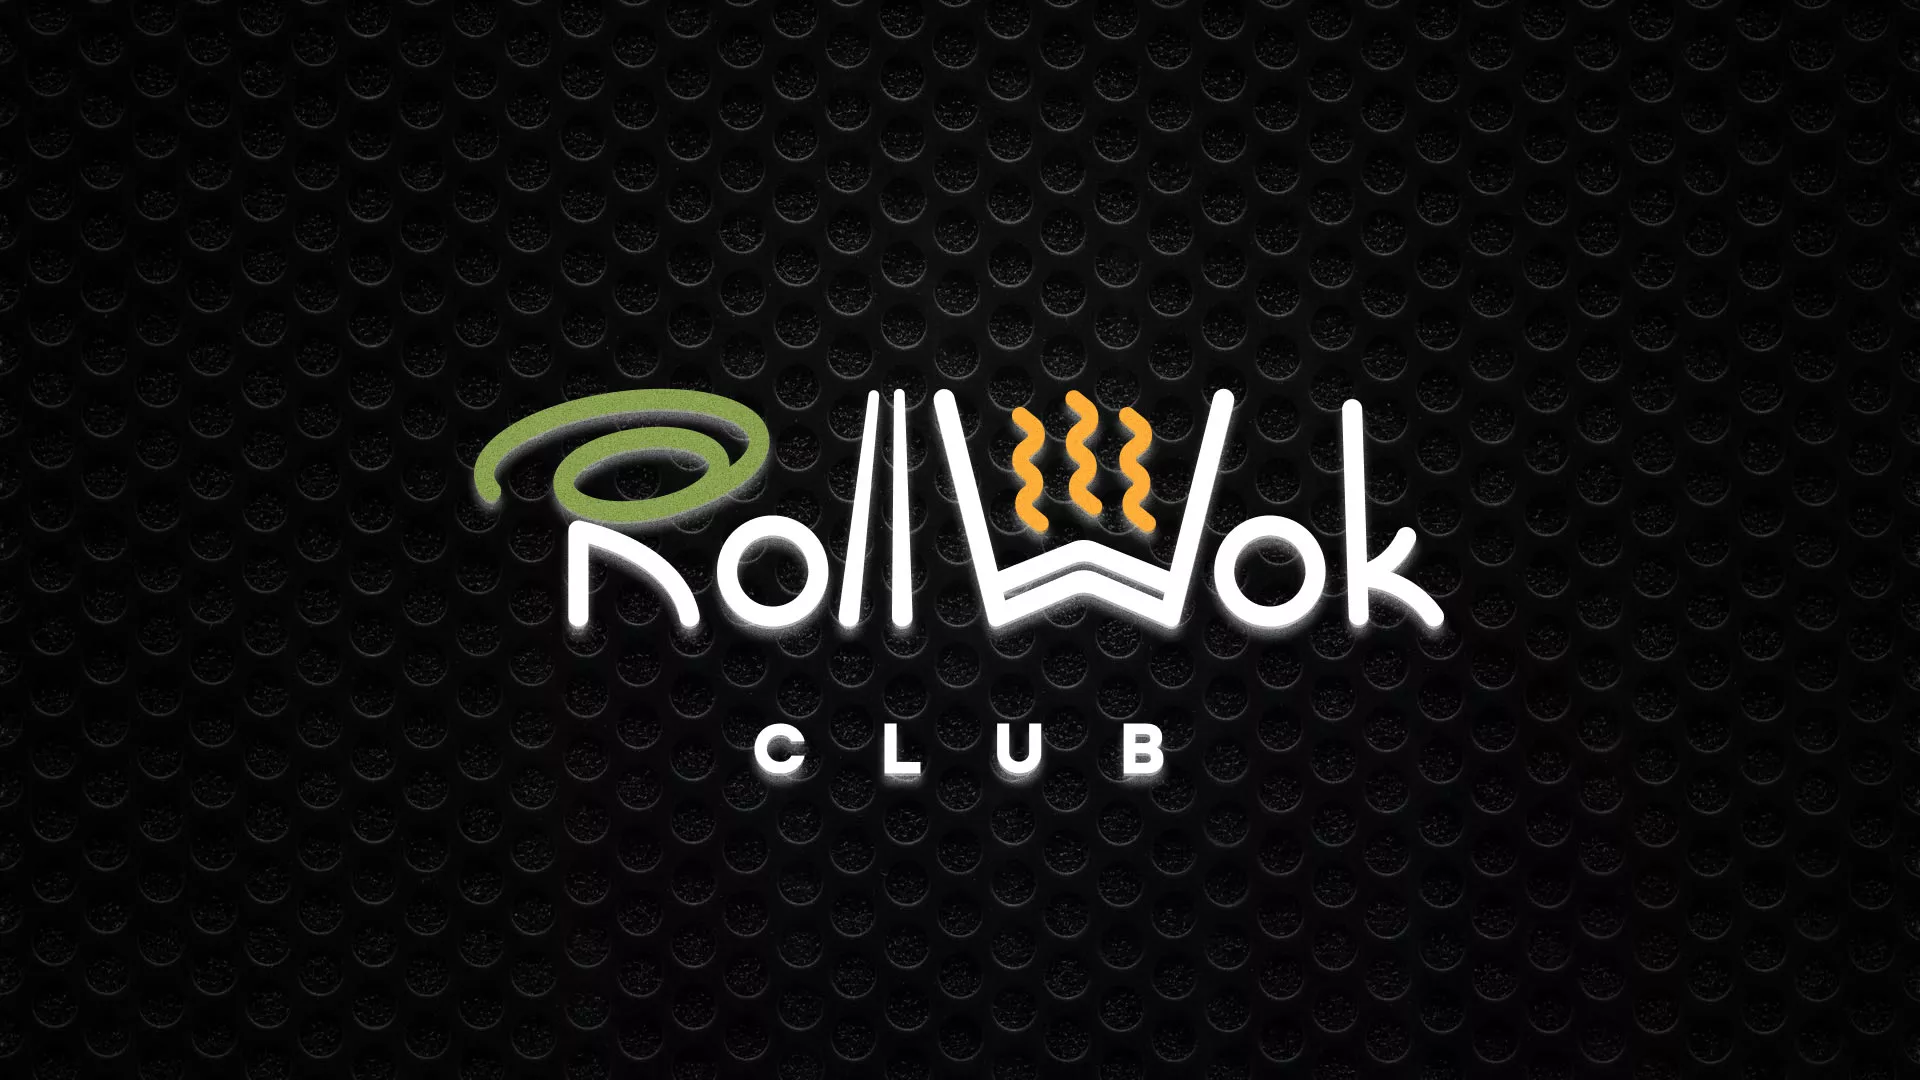 Брендирование торговых точек суши-бара «Roll Wok Club» в Болохово